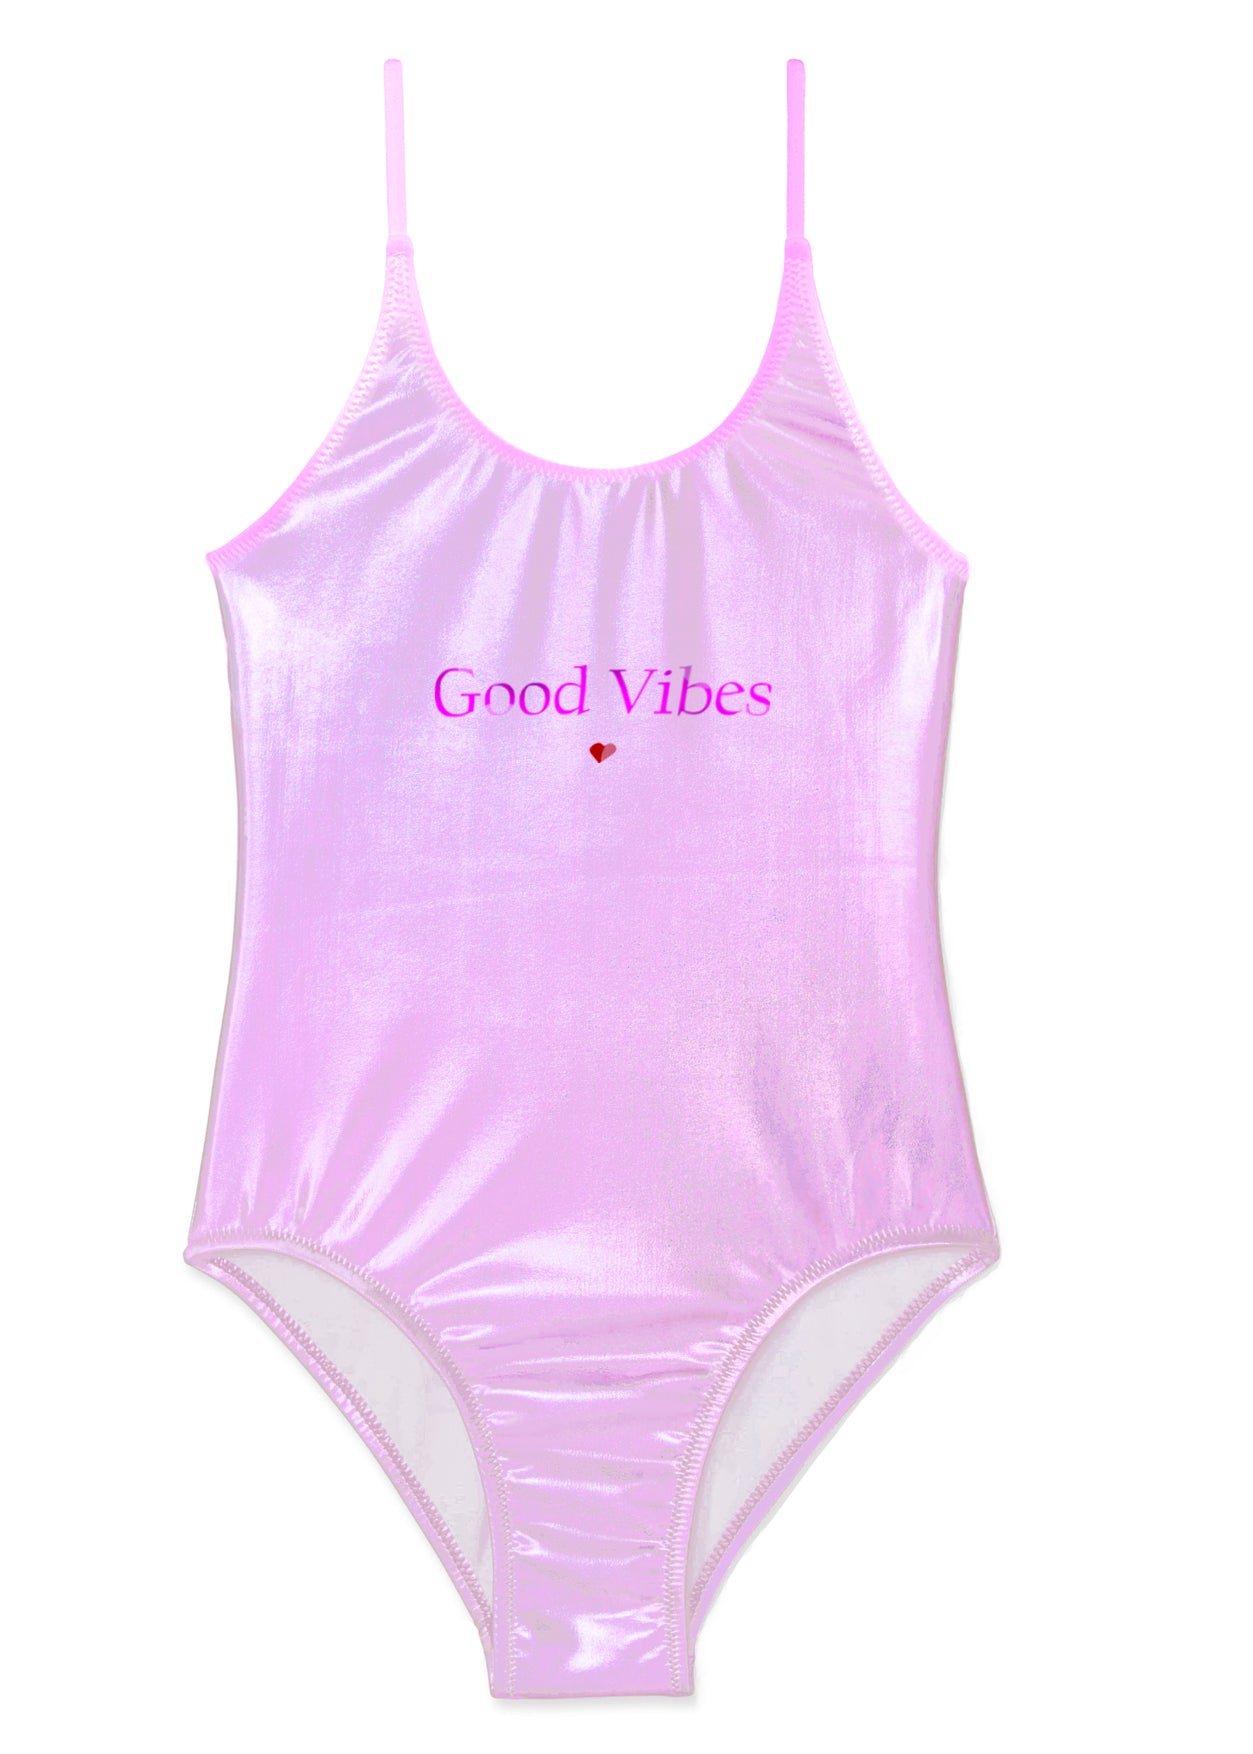 beachwear for girls, pink swimsuits for girls, pink swimwear for girls, metallic pink bathing suit for girls